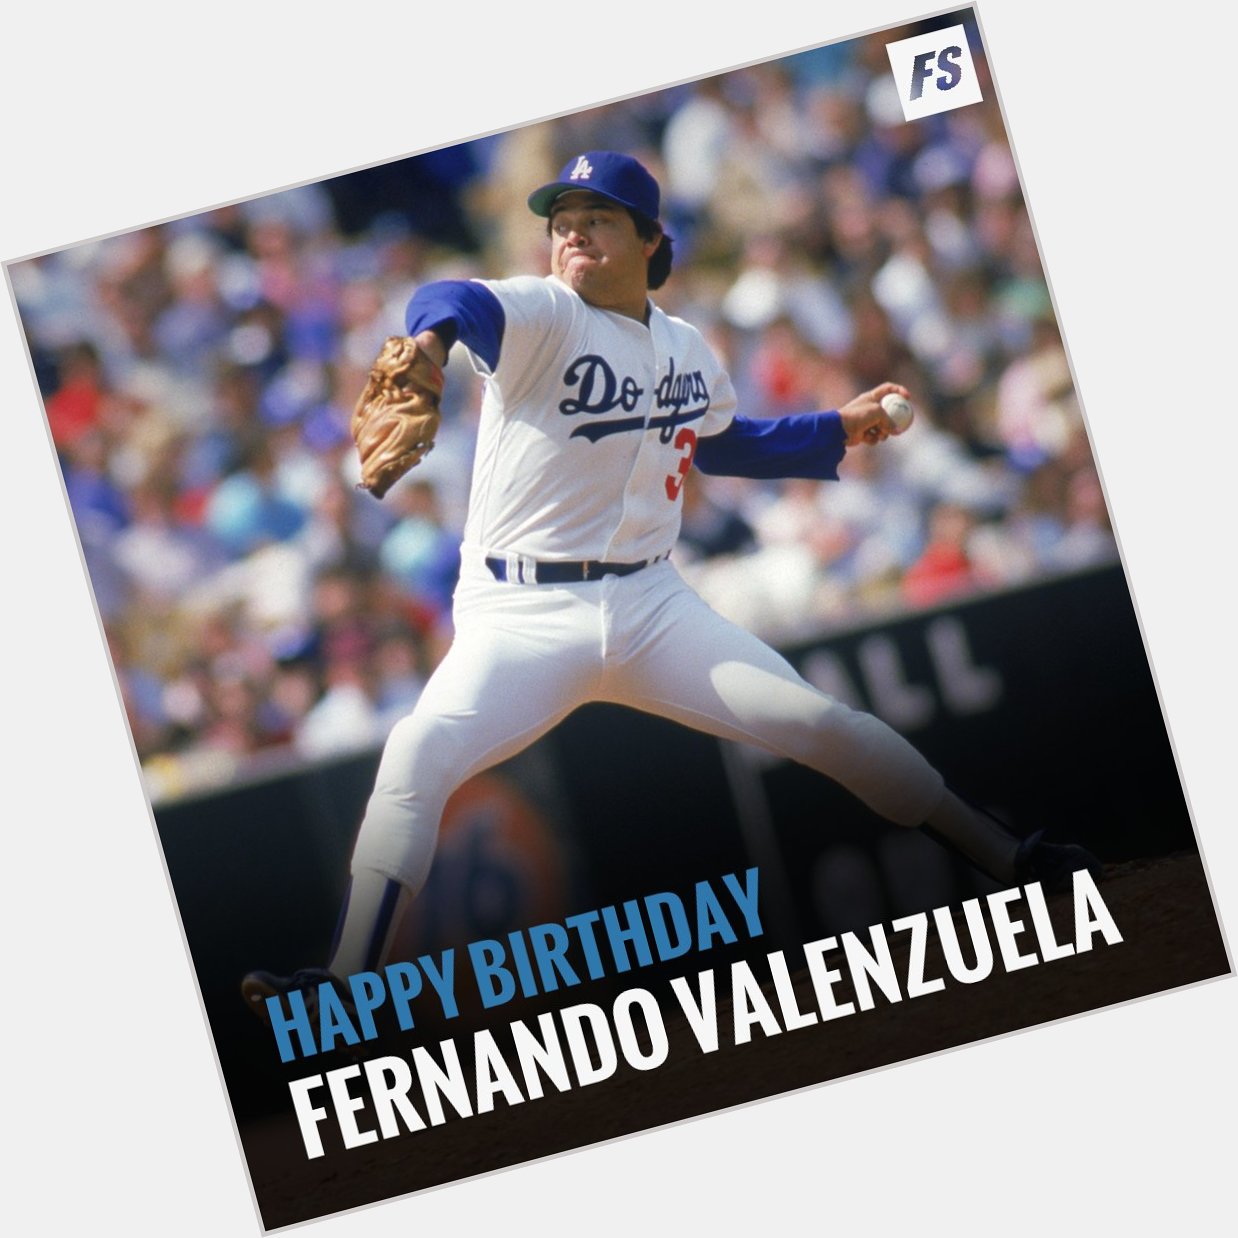 Happy Birthday to legend Fernando Valenzuela! 